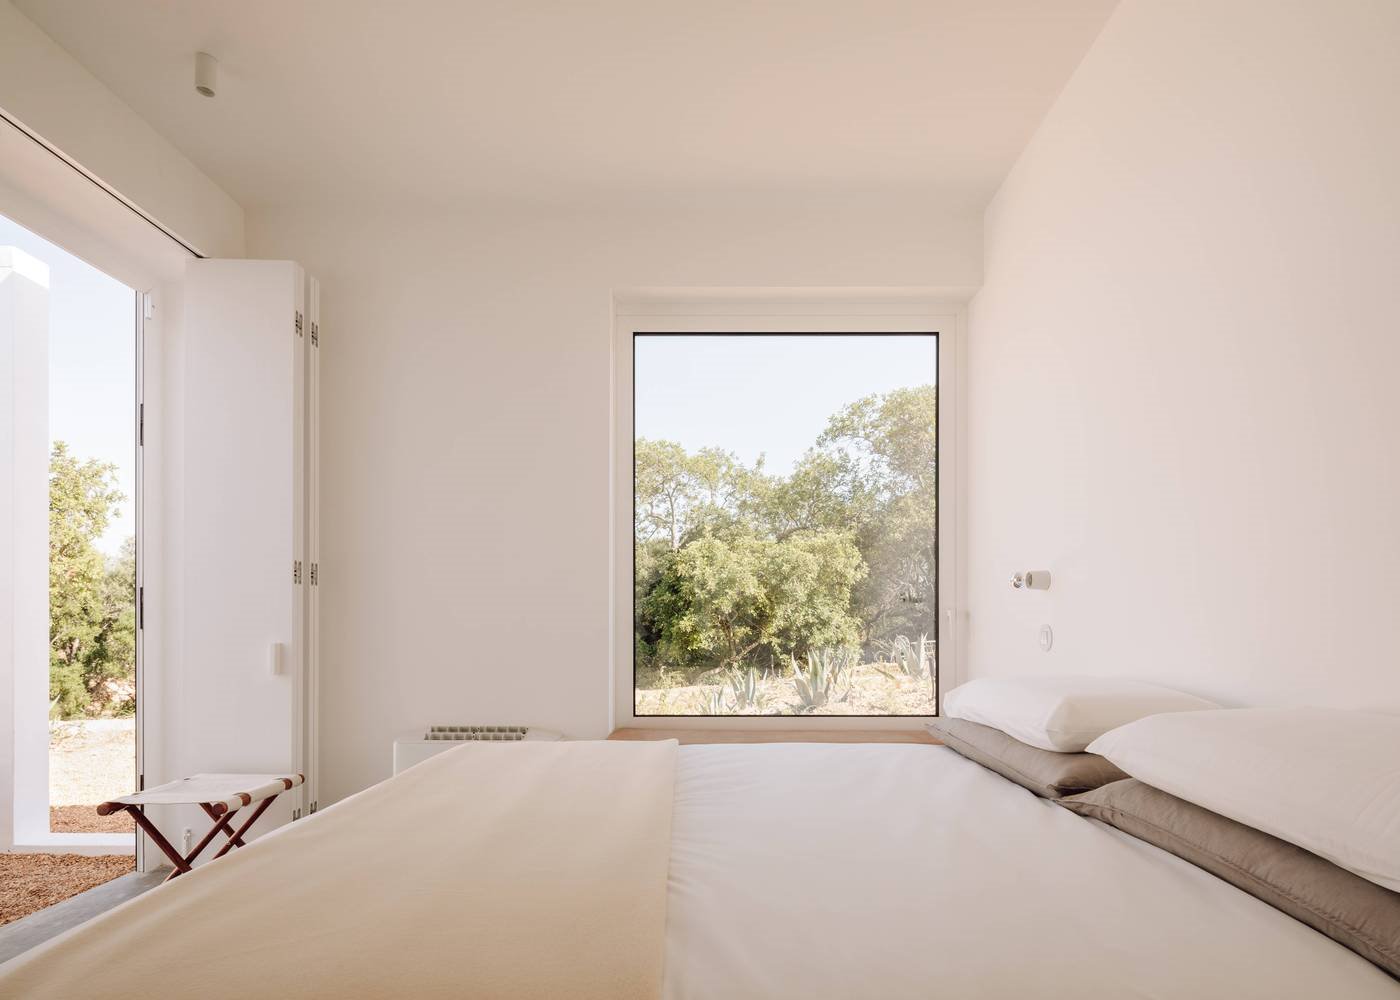 Casa de vacaciones en el algarve en Portugal con fachada e interiores de color blanco dormitorio